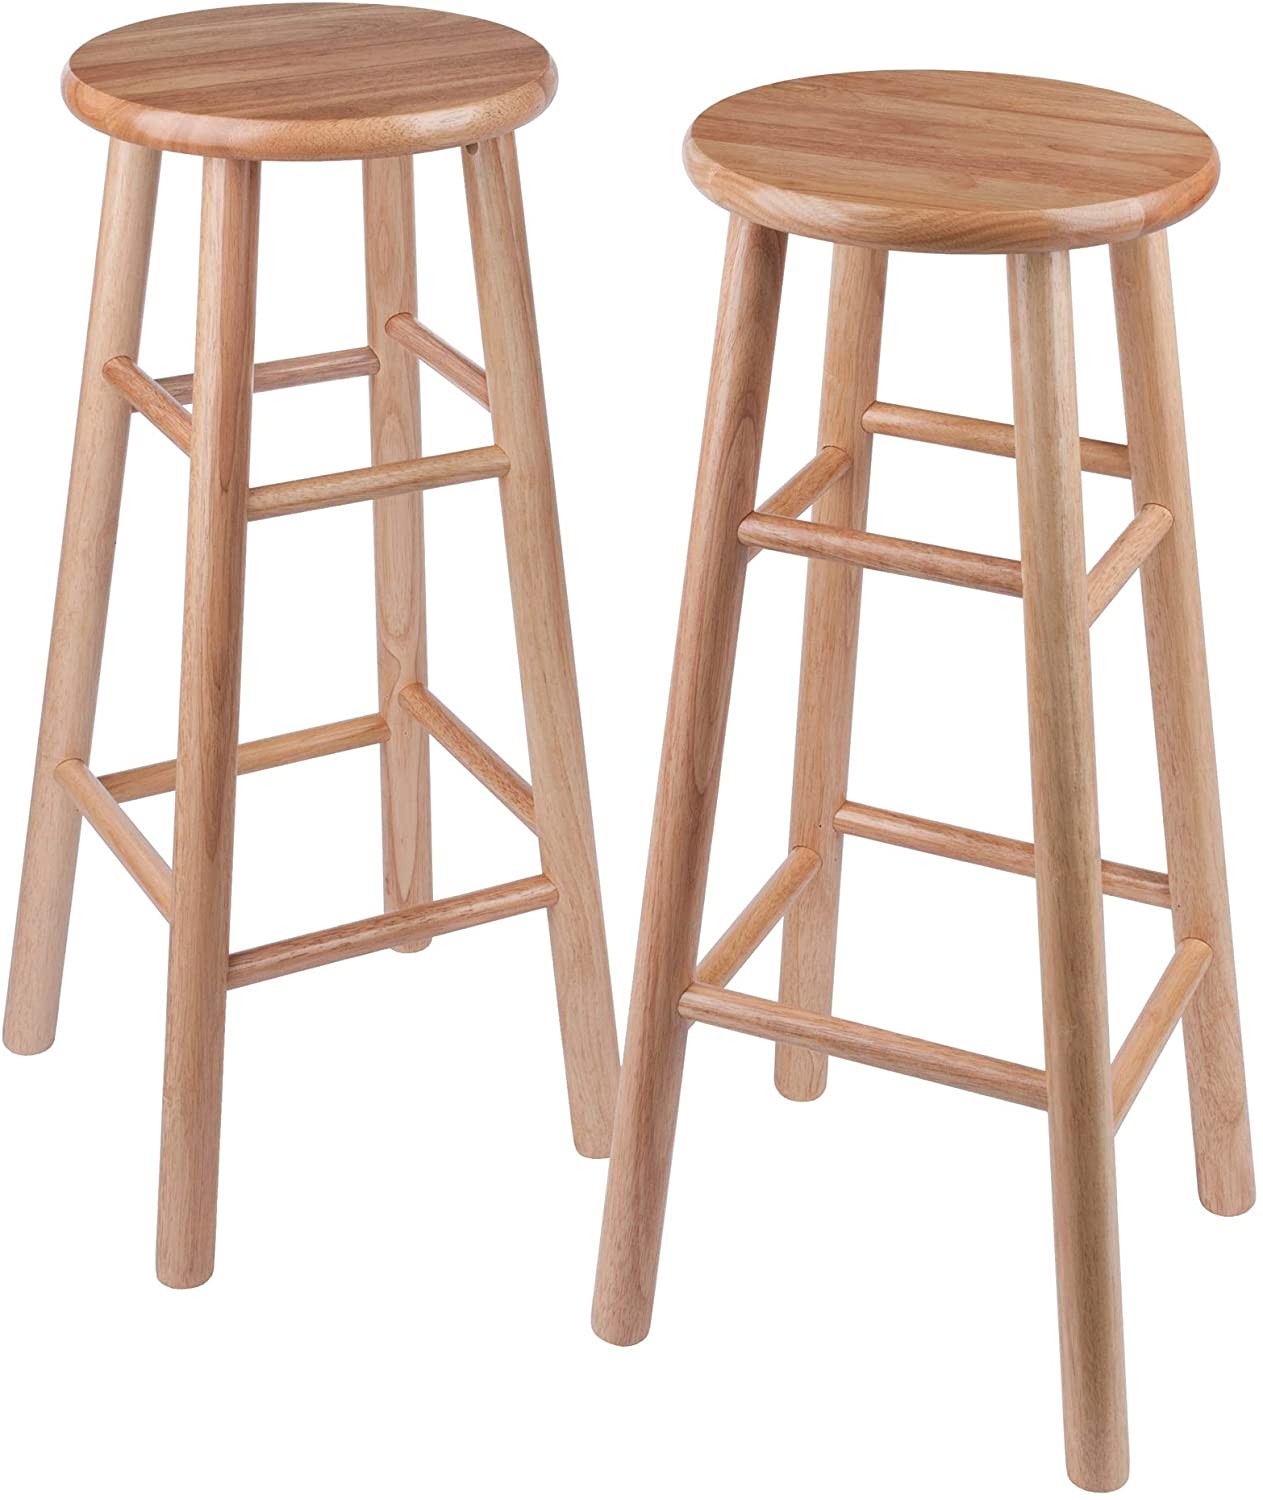 wood long stool